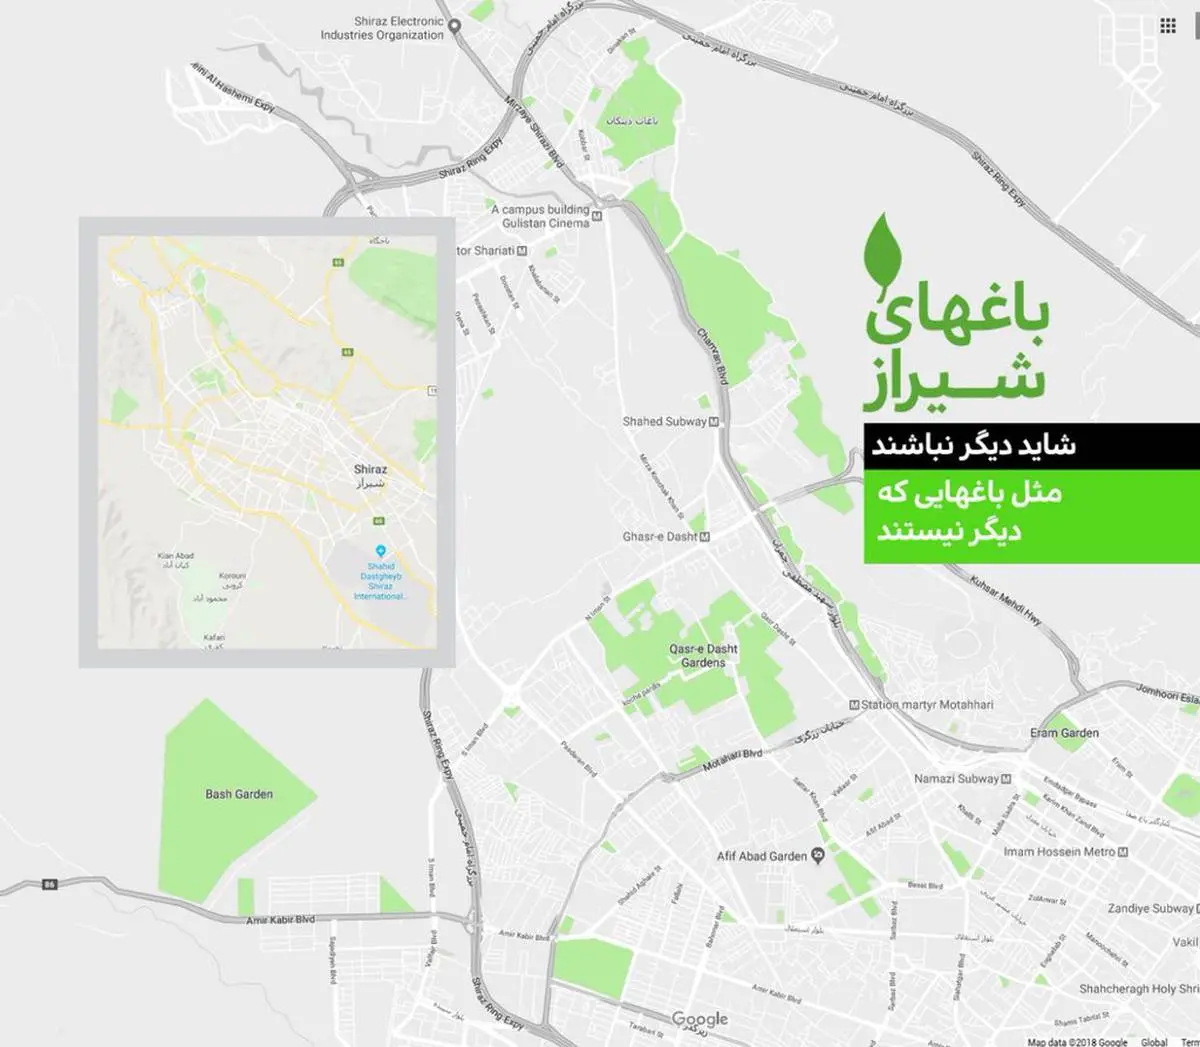 اعتراض تویتری به تغییر کاربری باغ معروف شیراز